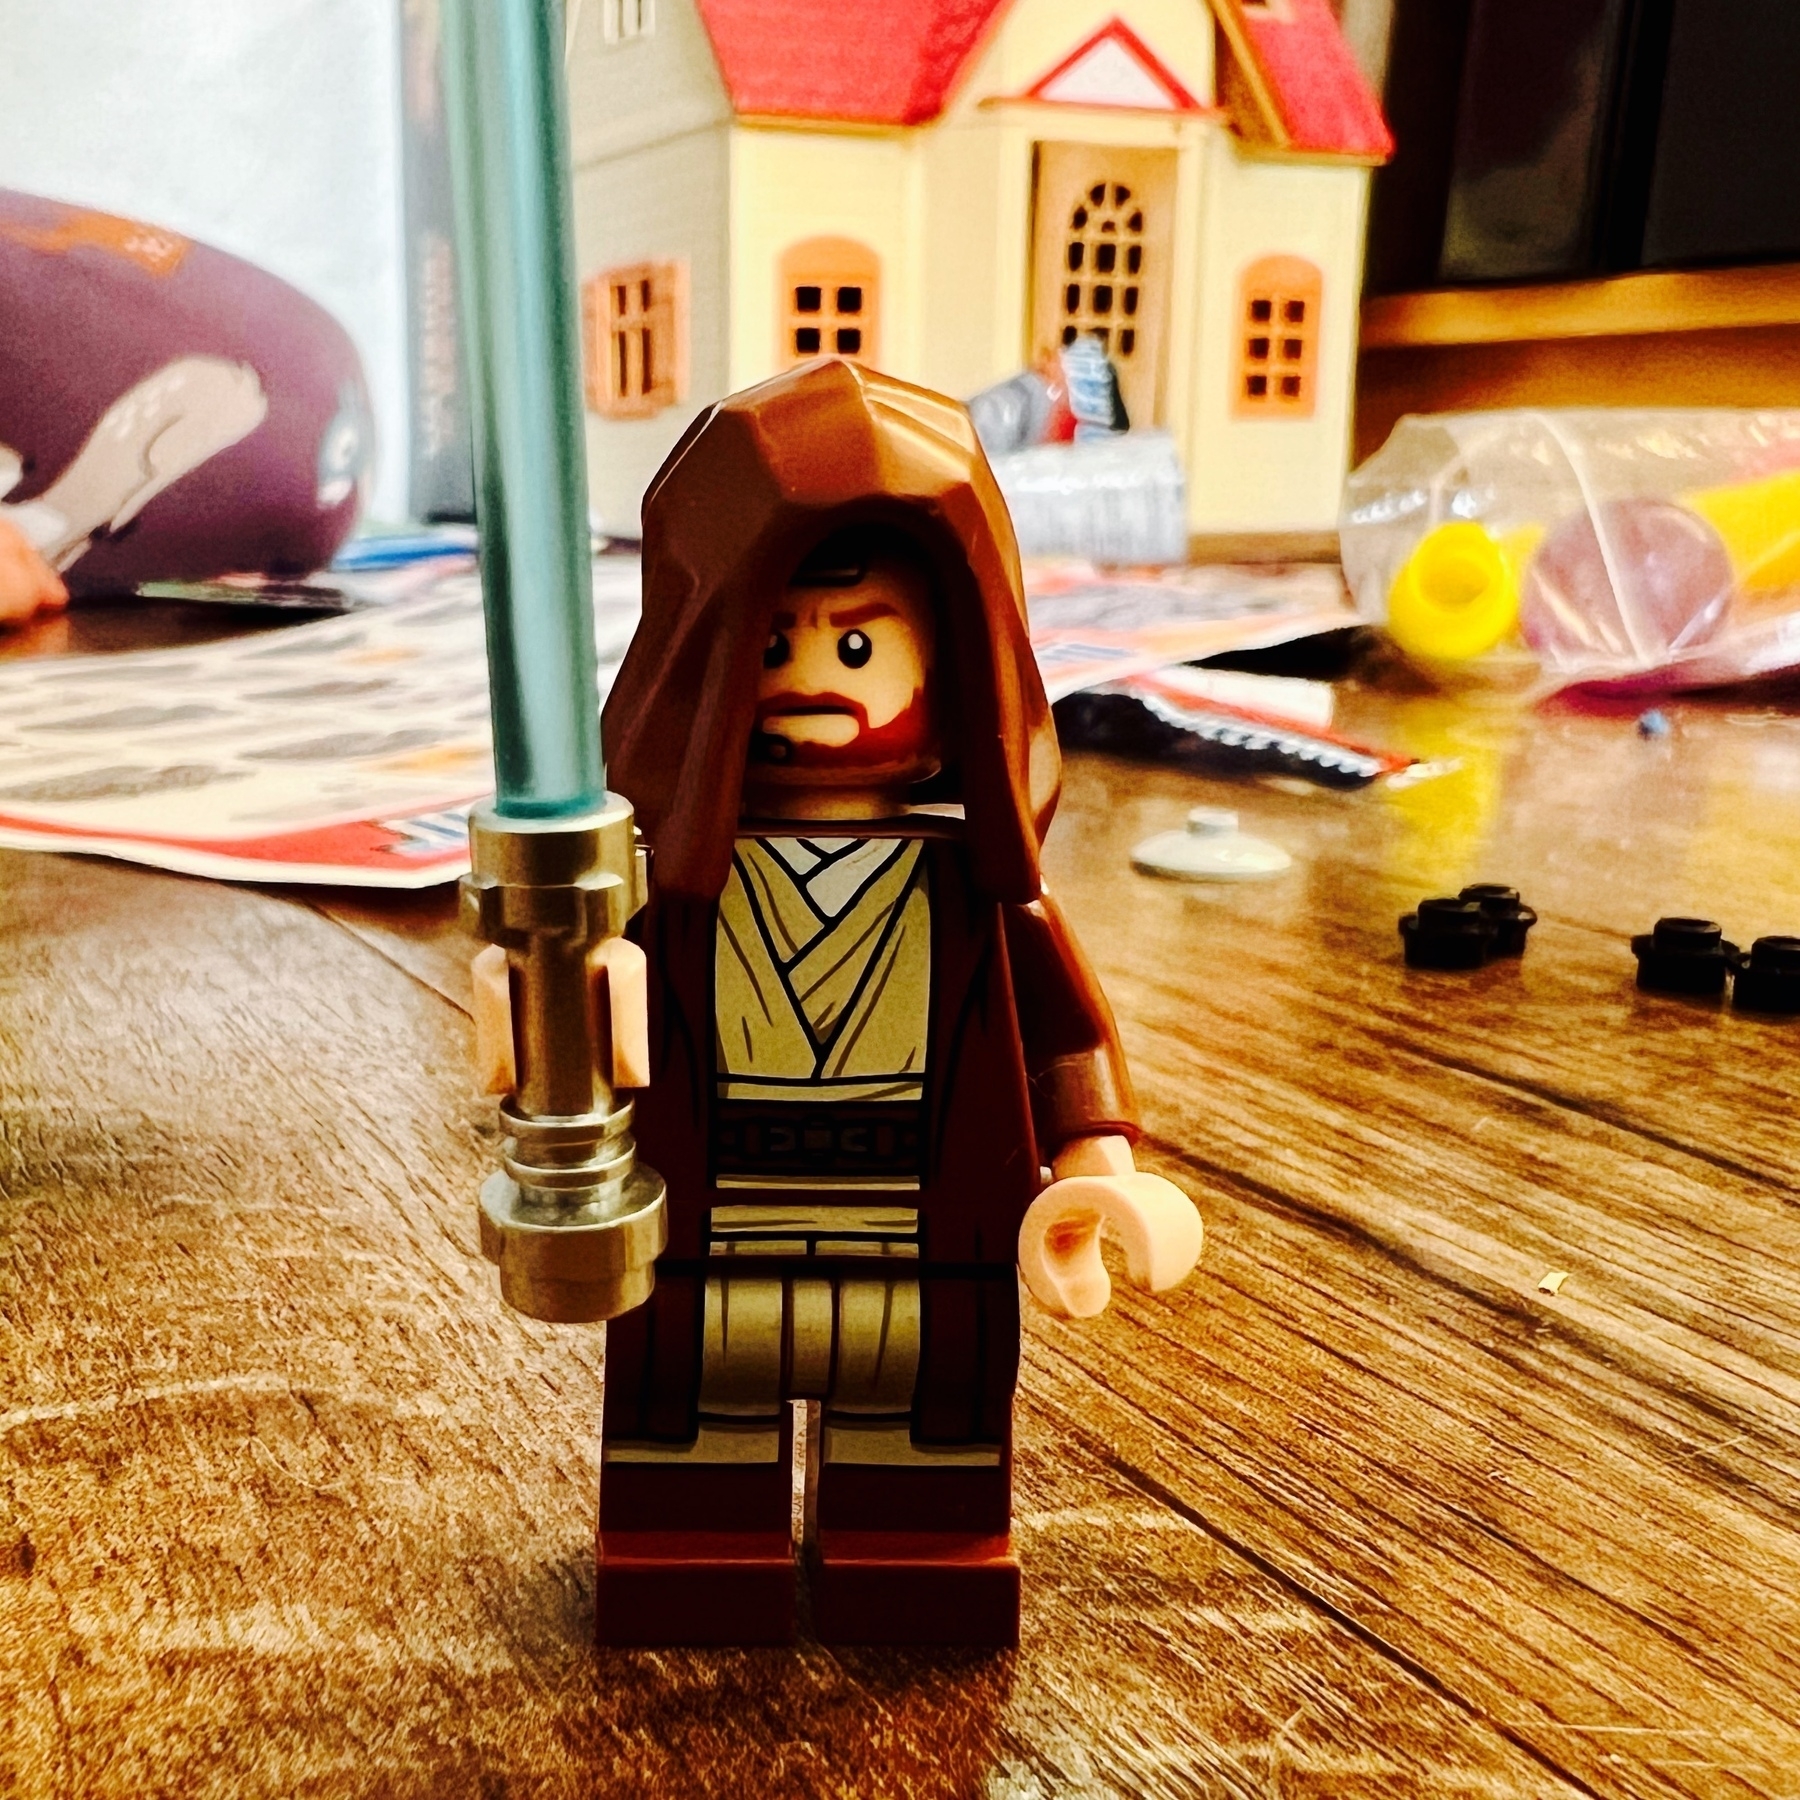 A Lego Obi-Wan minifig